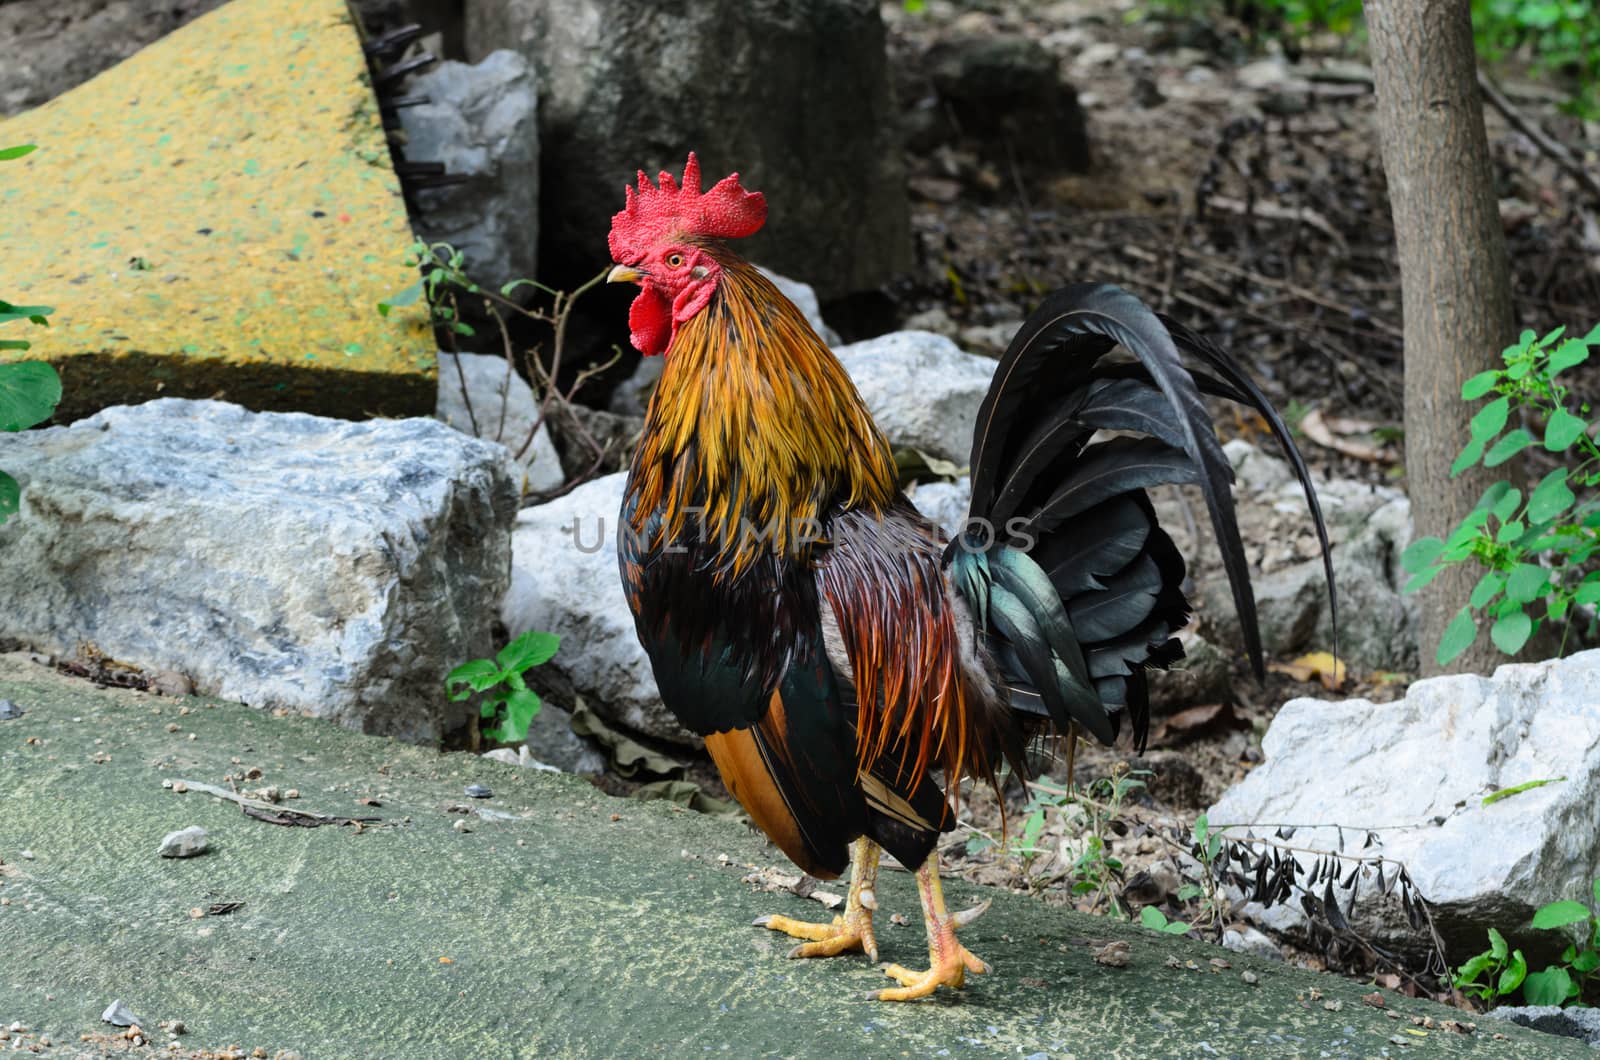 Chicken  cockfight, Fighting chicken on backgrund  nature. In Thailand.